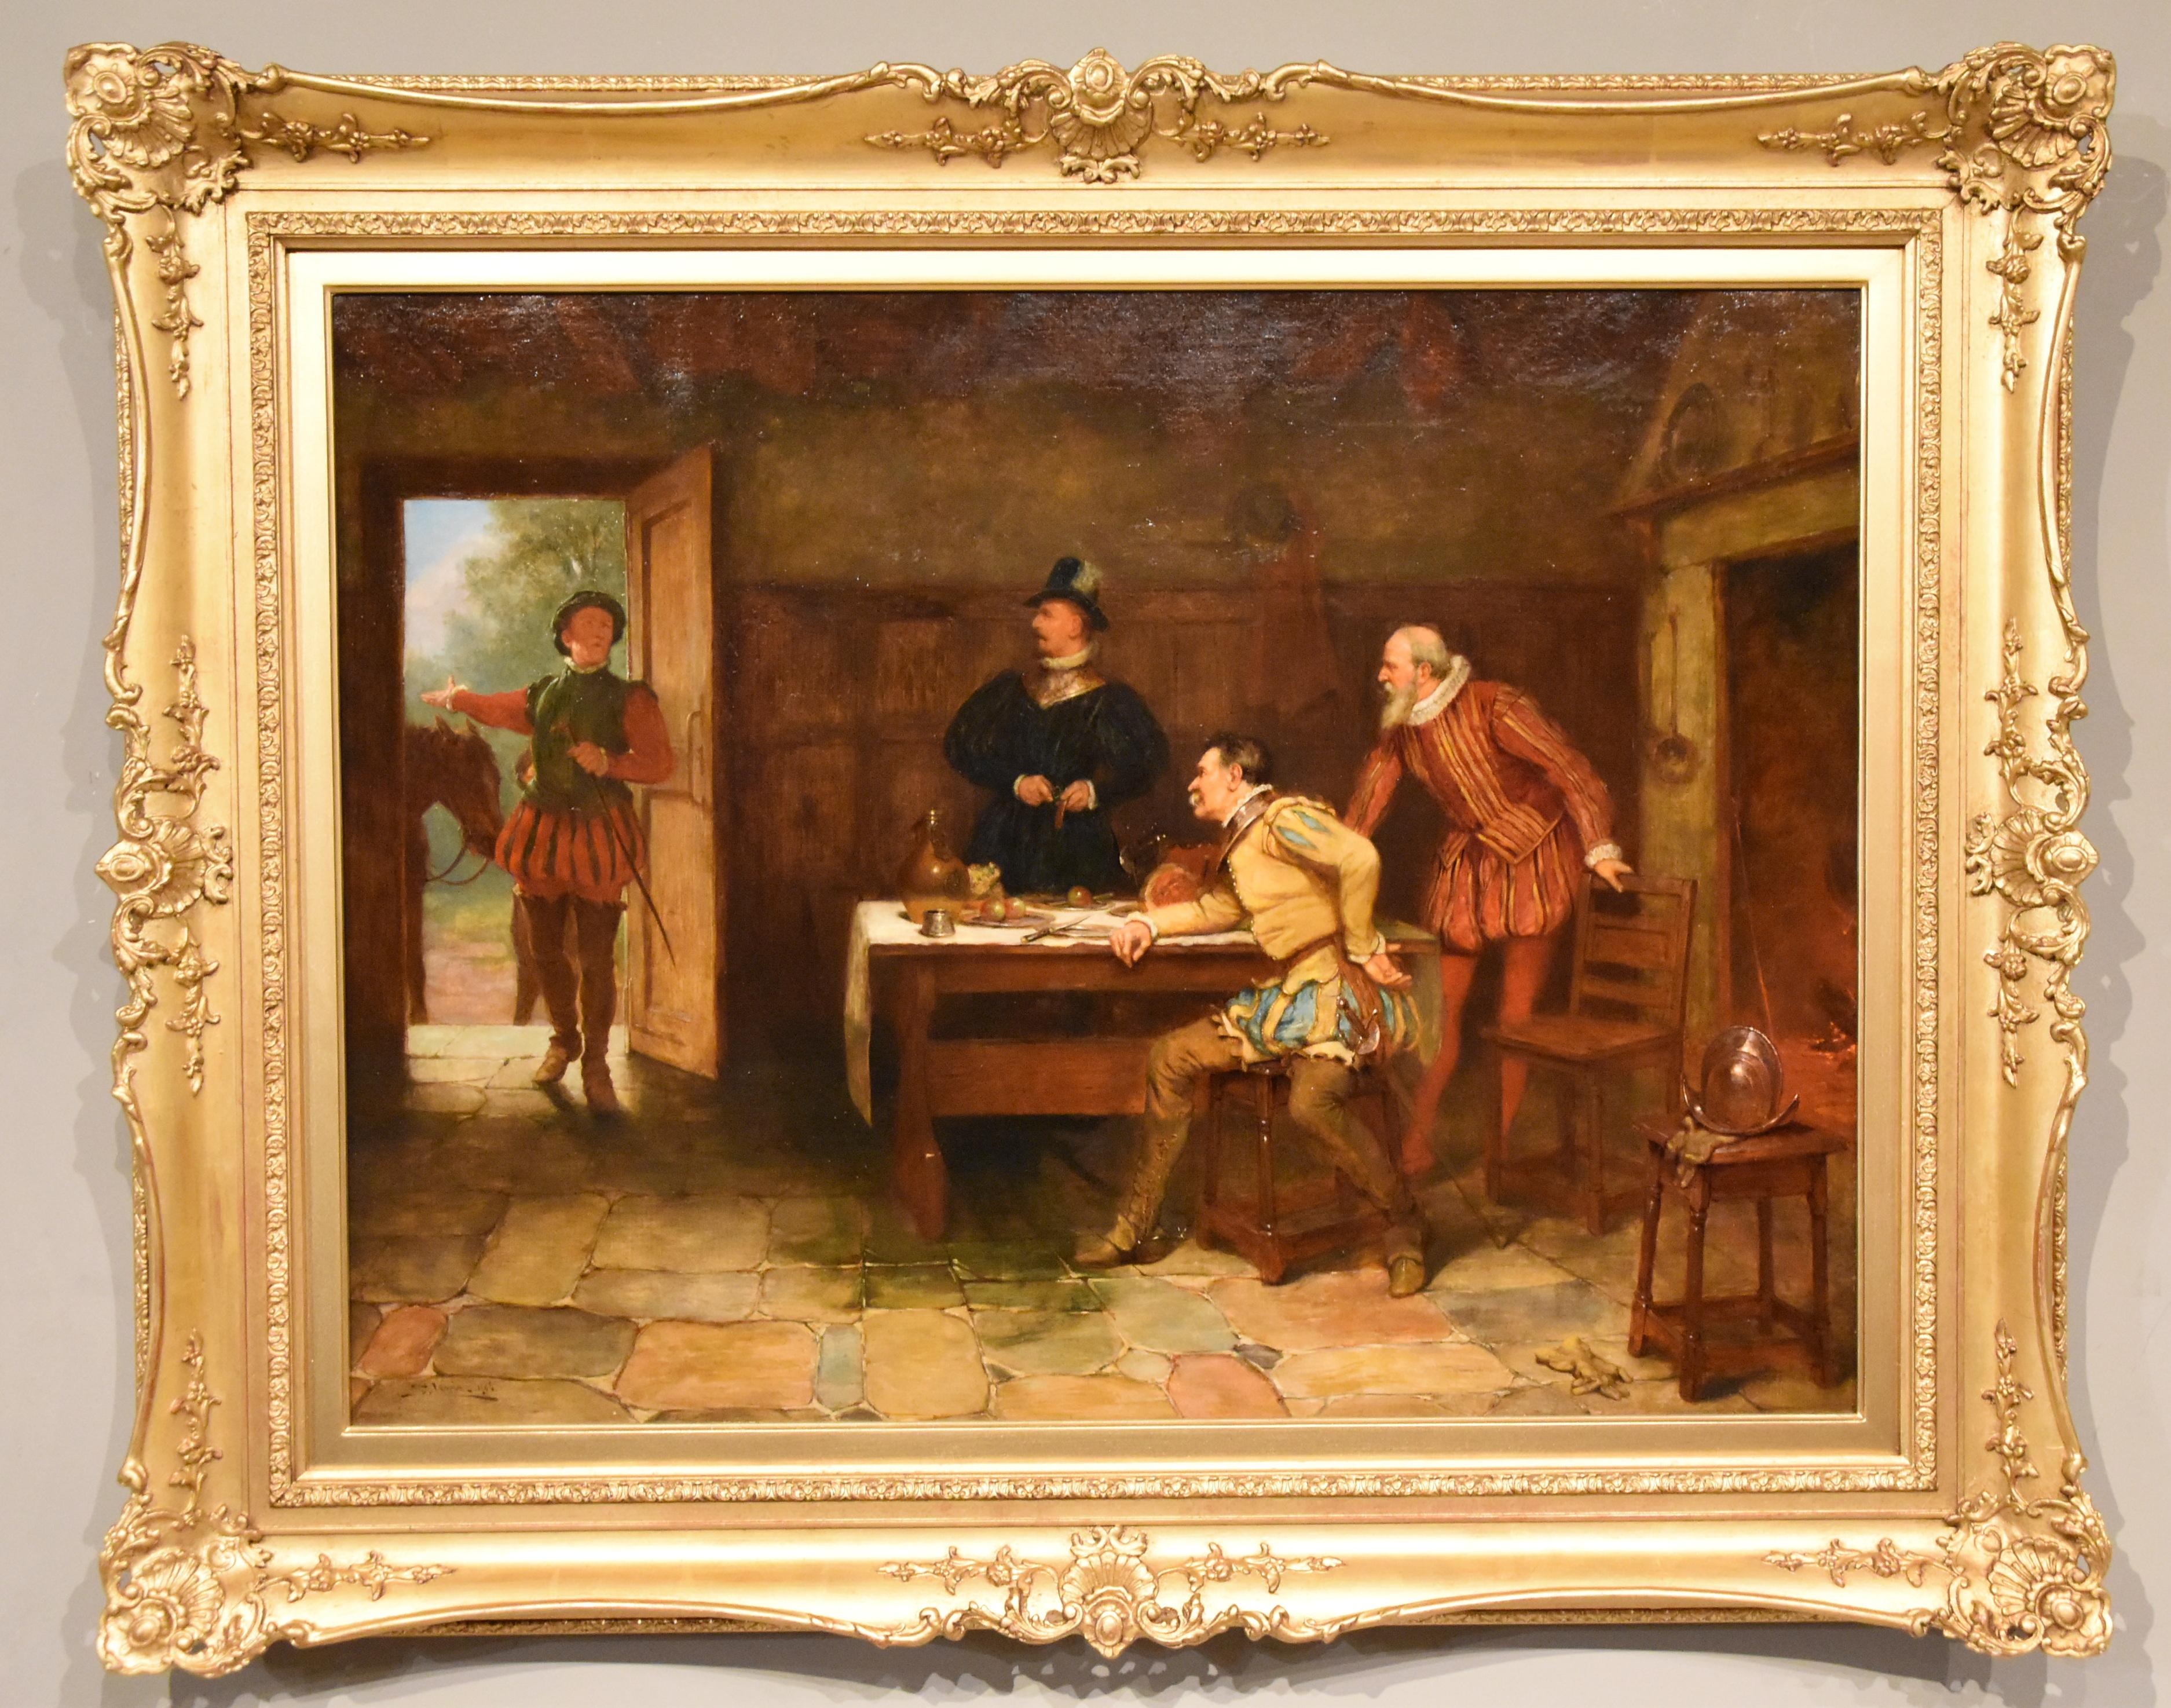 Ölgemälde von Stephen Samuel Lewin "The Armada in Sight" 1848 - 1909 Londoner Maler von historischen und häuslichen Genreszenen. Er stellte in der Royal Academy und der Royal Society of British Artists aus. Öl auf Leinwand. Signiert und datiert